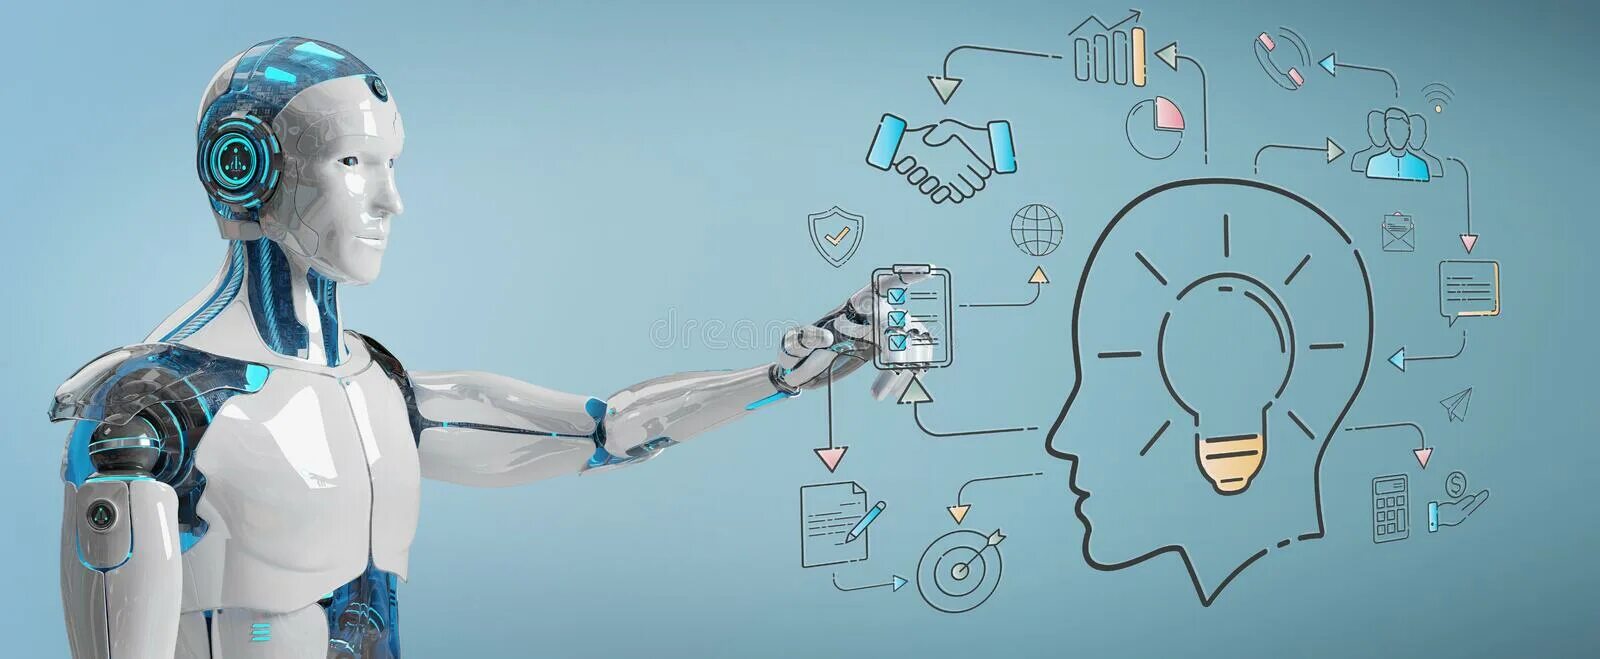 Разработка искусственного интеллекта. Искусственный интеллект голограмма. Написание искусственного интеллекта. Робот и человек на белом фоне.